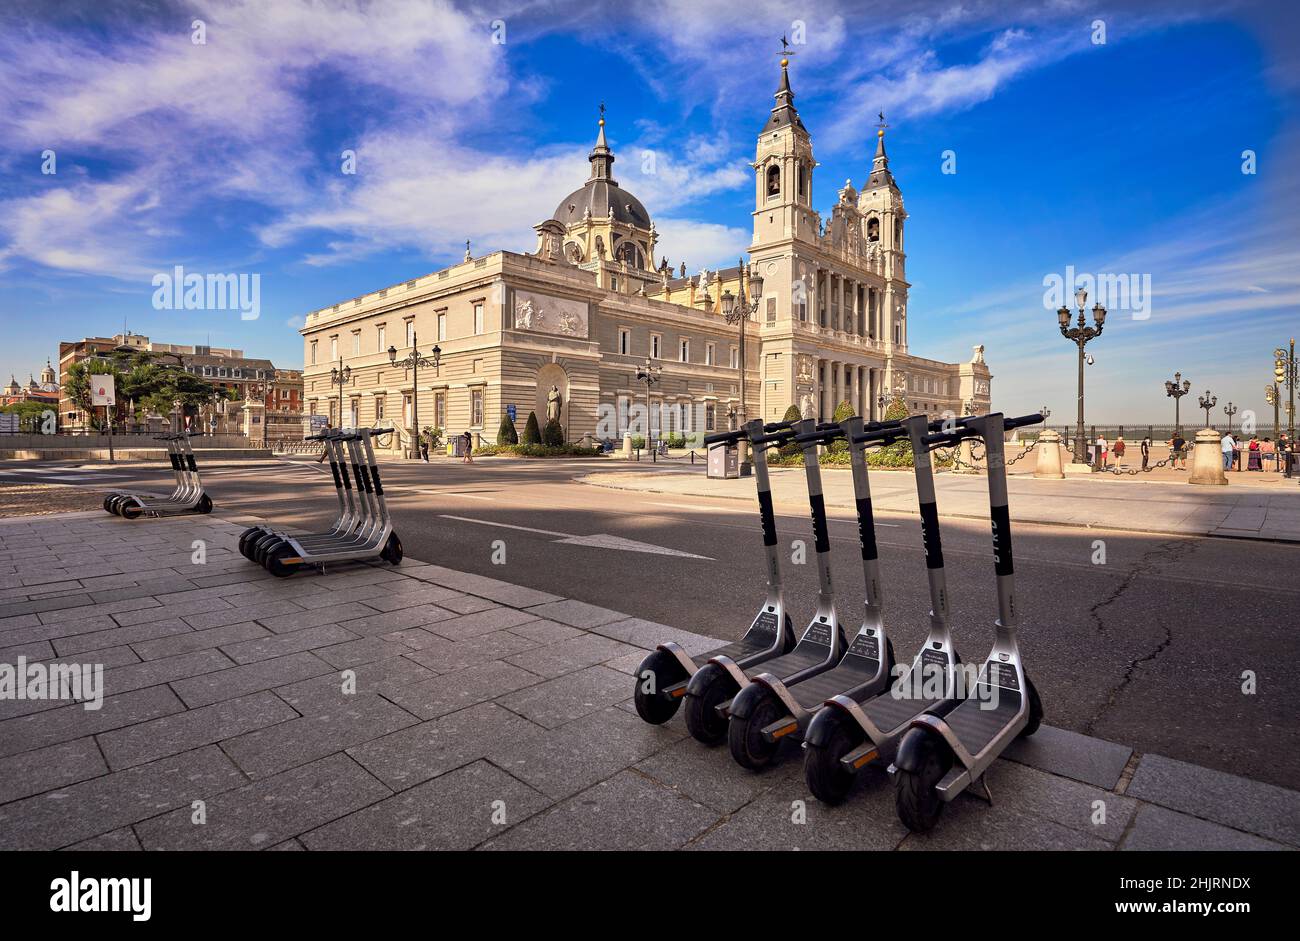 Elektroroller bei der Kathedrale von Almudena geparkt. Madrid, Spanien. Roller sind zu einer gemeinsamen Lösung für die urbane Mobilität im Stadtzentrum geworden. Stockfoto